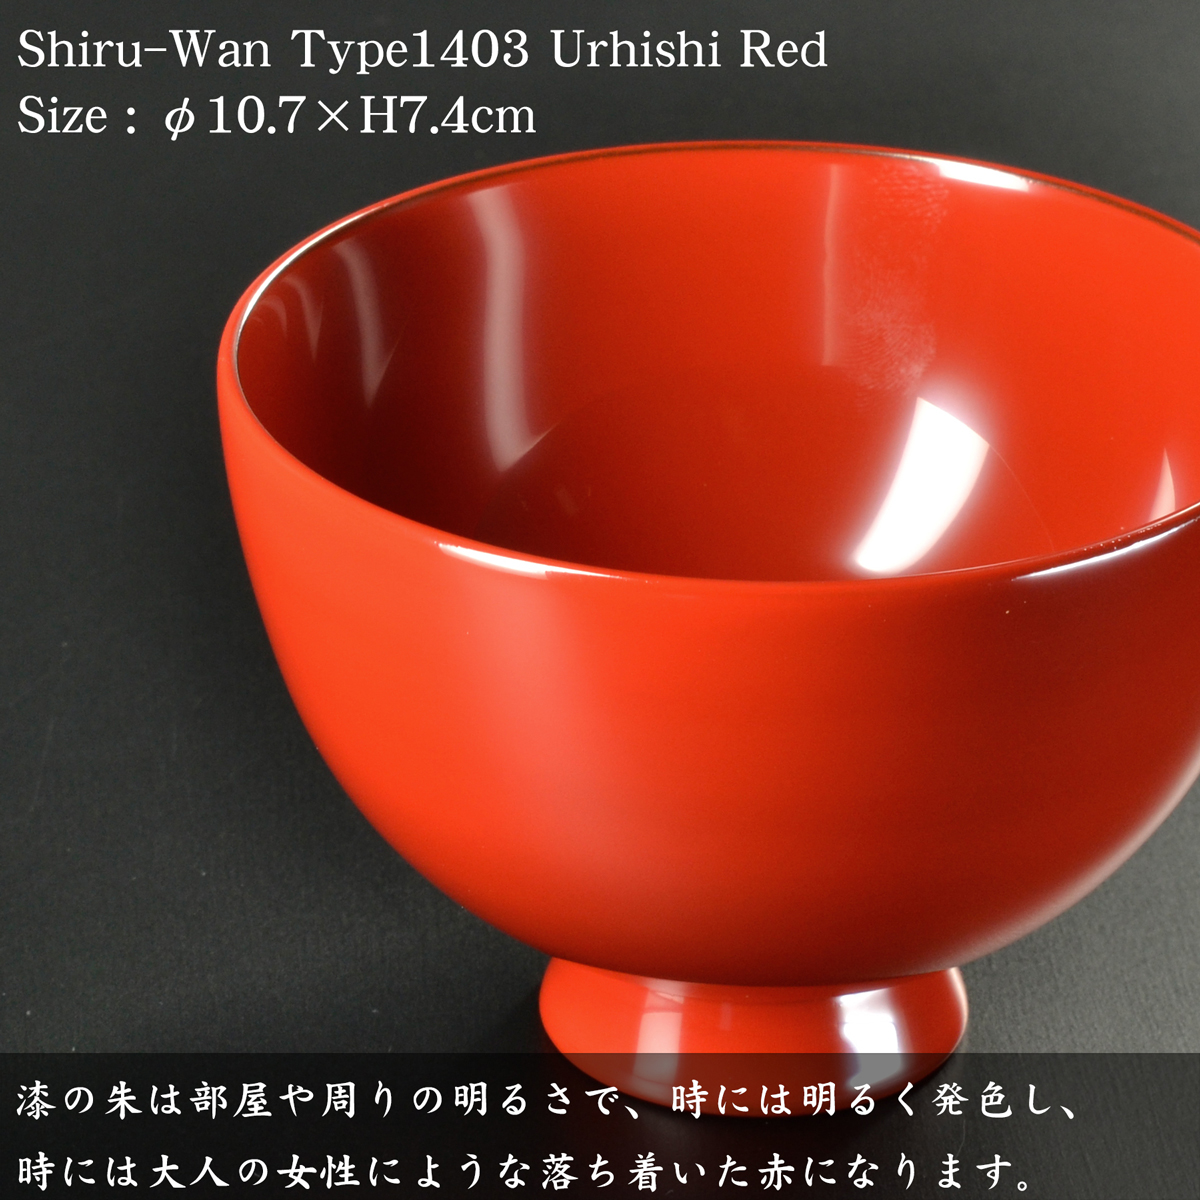 木製 汁椀 type1403 朱 漆塗り モダン 漆器 日本製 国産 食器洗浄機 